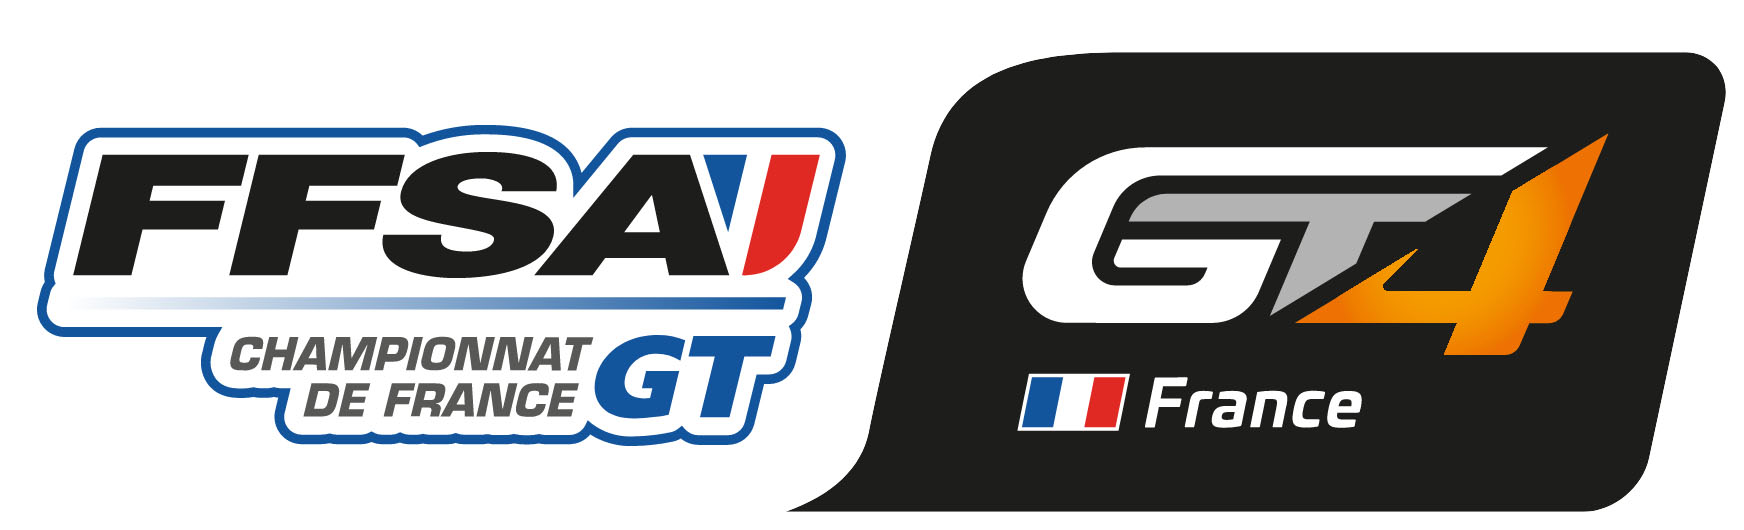 FFSA GT4